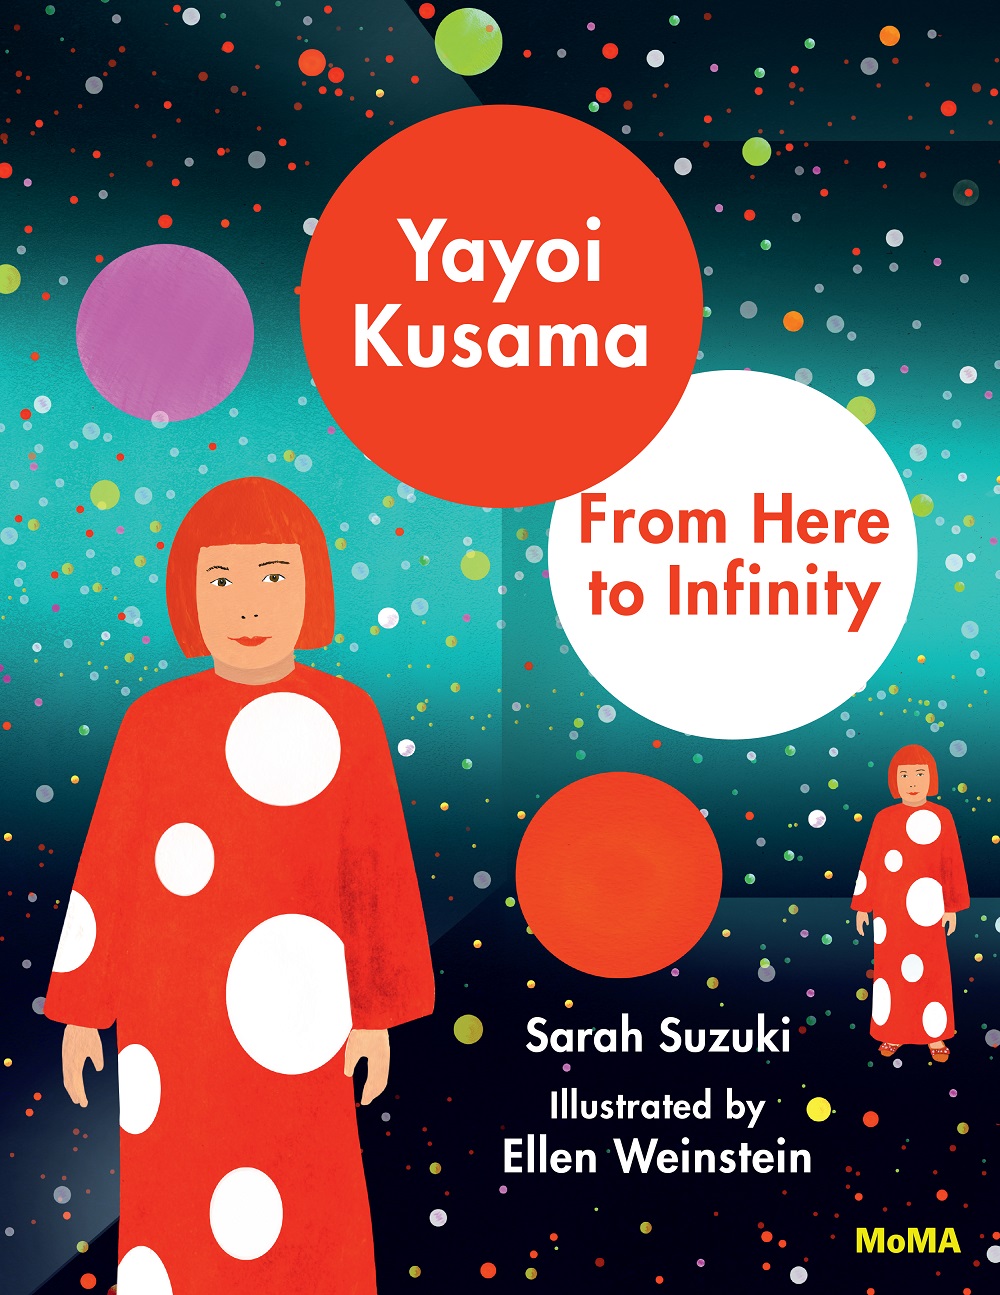 ArtAsiaPacific: The Life of Yayoi Kusama Through Images